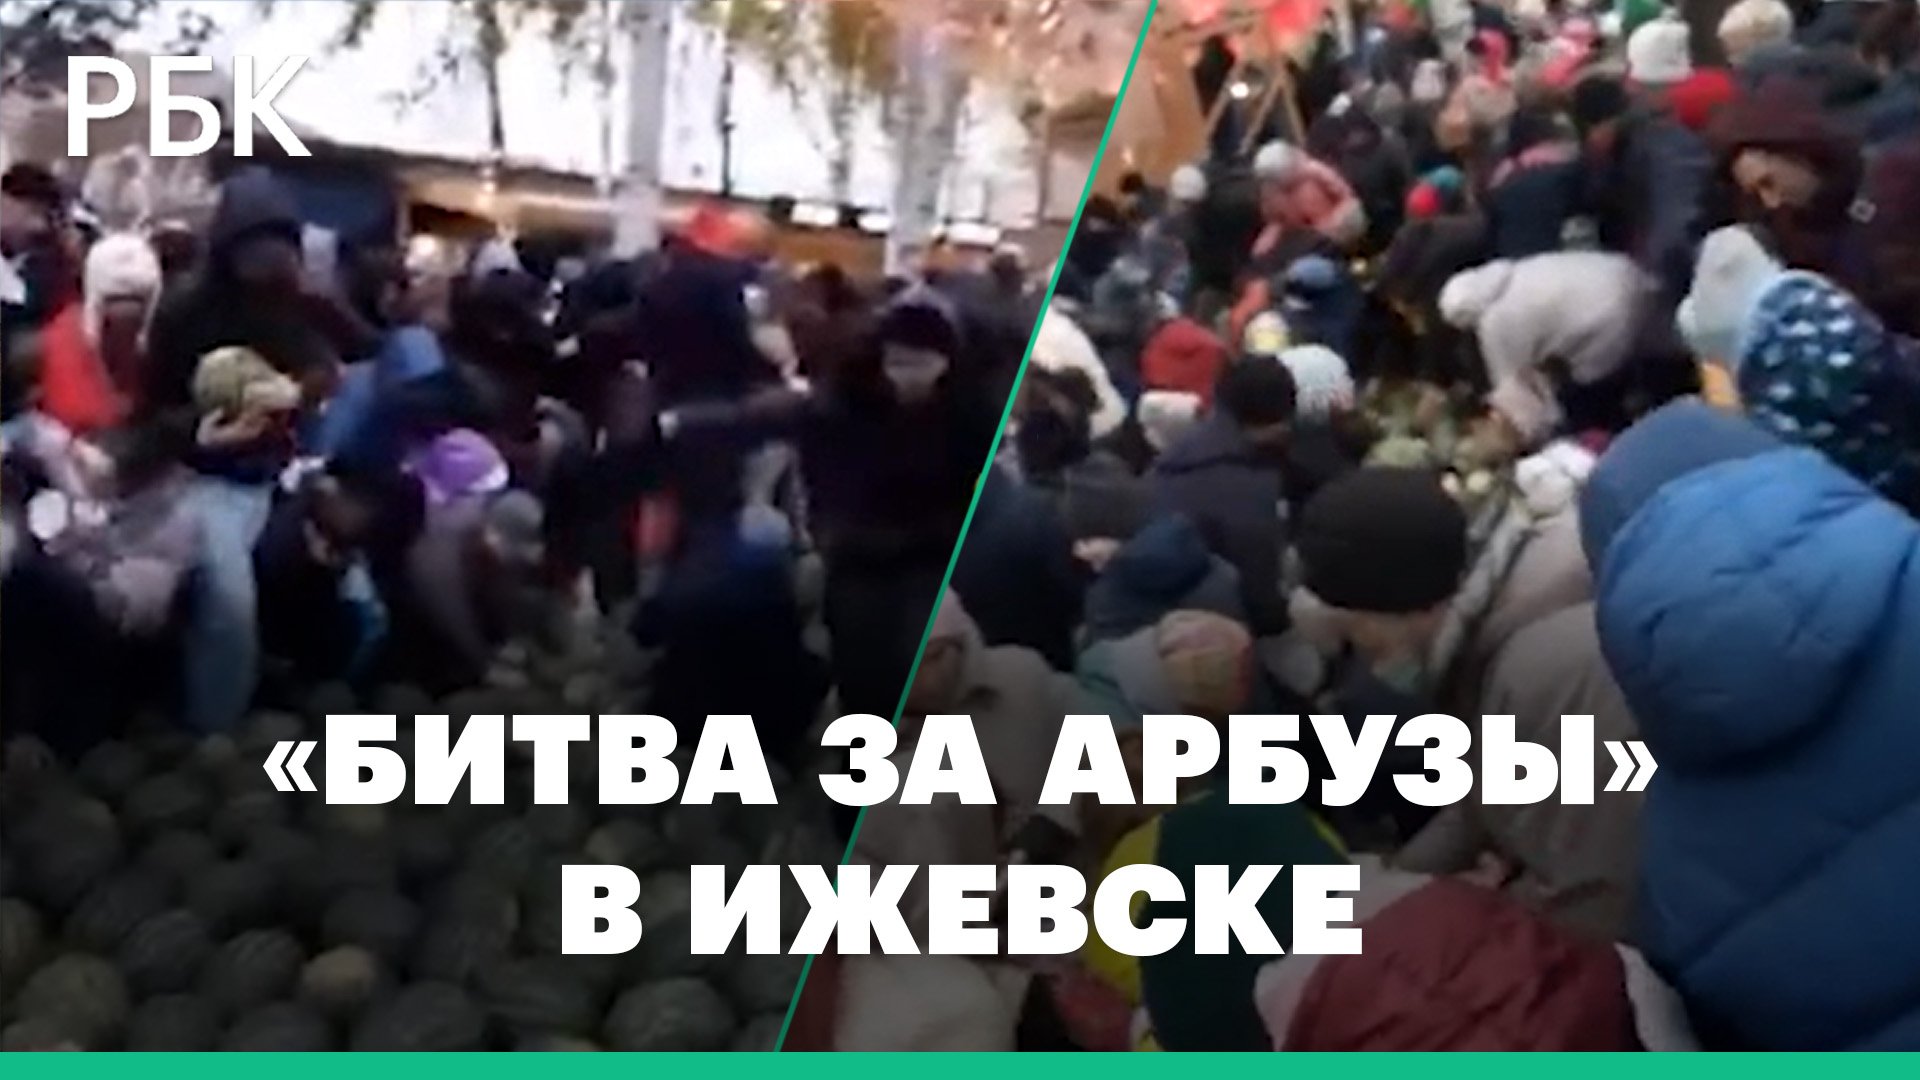 Давка на празднике в Ижевске. Десятки человек толкались и кричали на раздаче 10 тонн арбузов